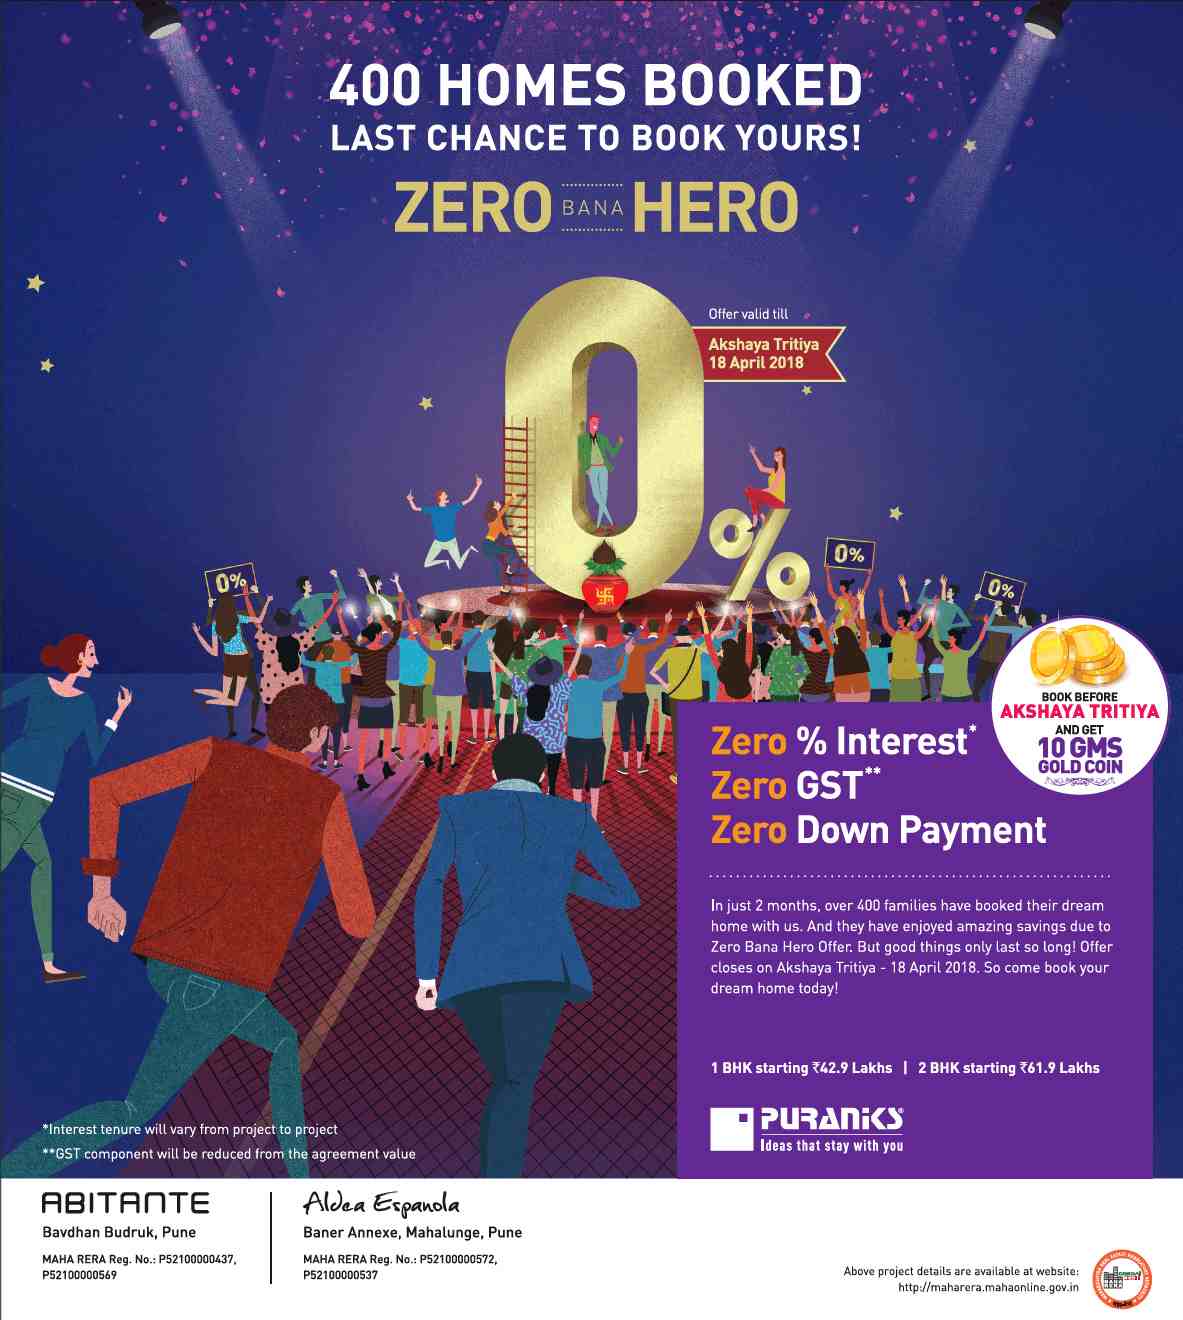 Book home with Zero Bana Hero Offer valid till Akshaya Tritiya at Puranik properties in Pune Update